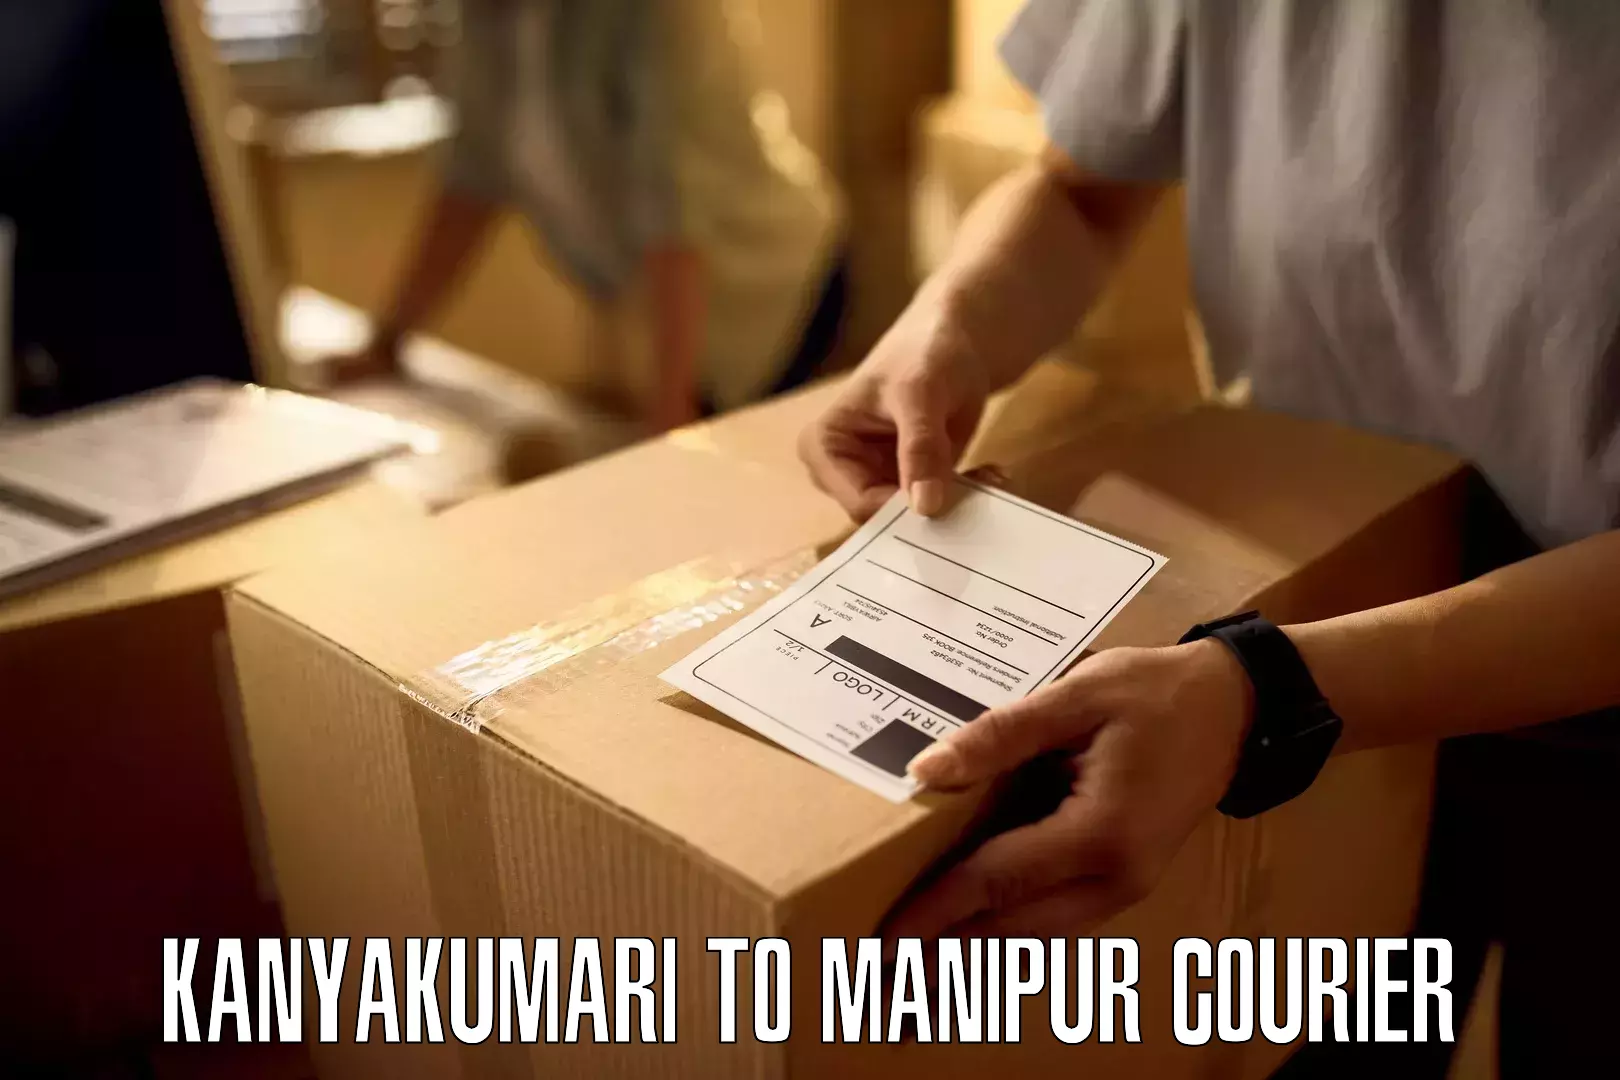 Multi-service courier options Kanyakumari to IIIT Senapati